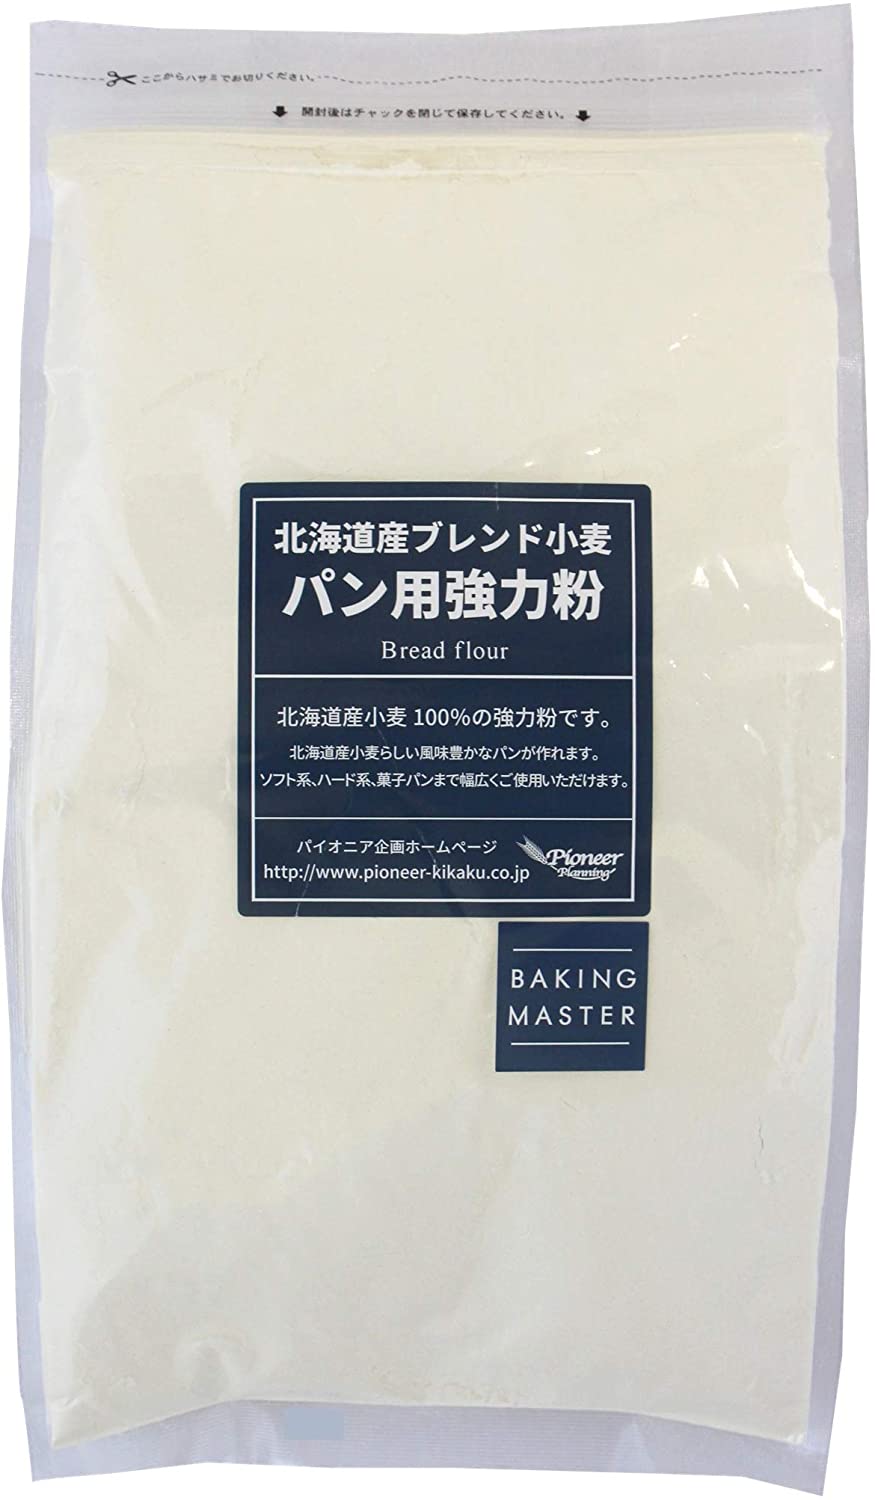 完成品 ABO BAKING MASTER 北海道産ブレンド小麦パン用強力粉 2kg 粉類